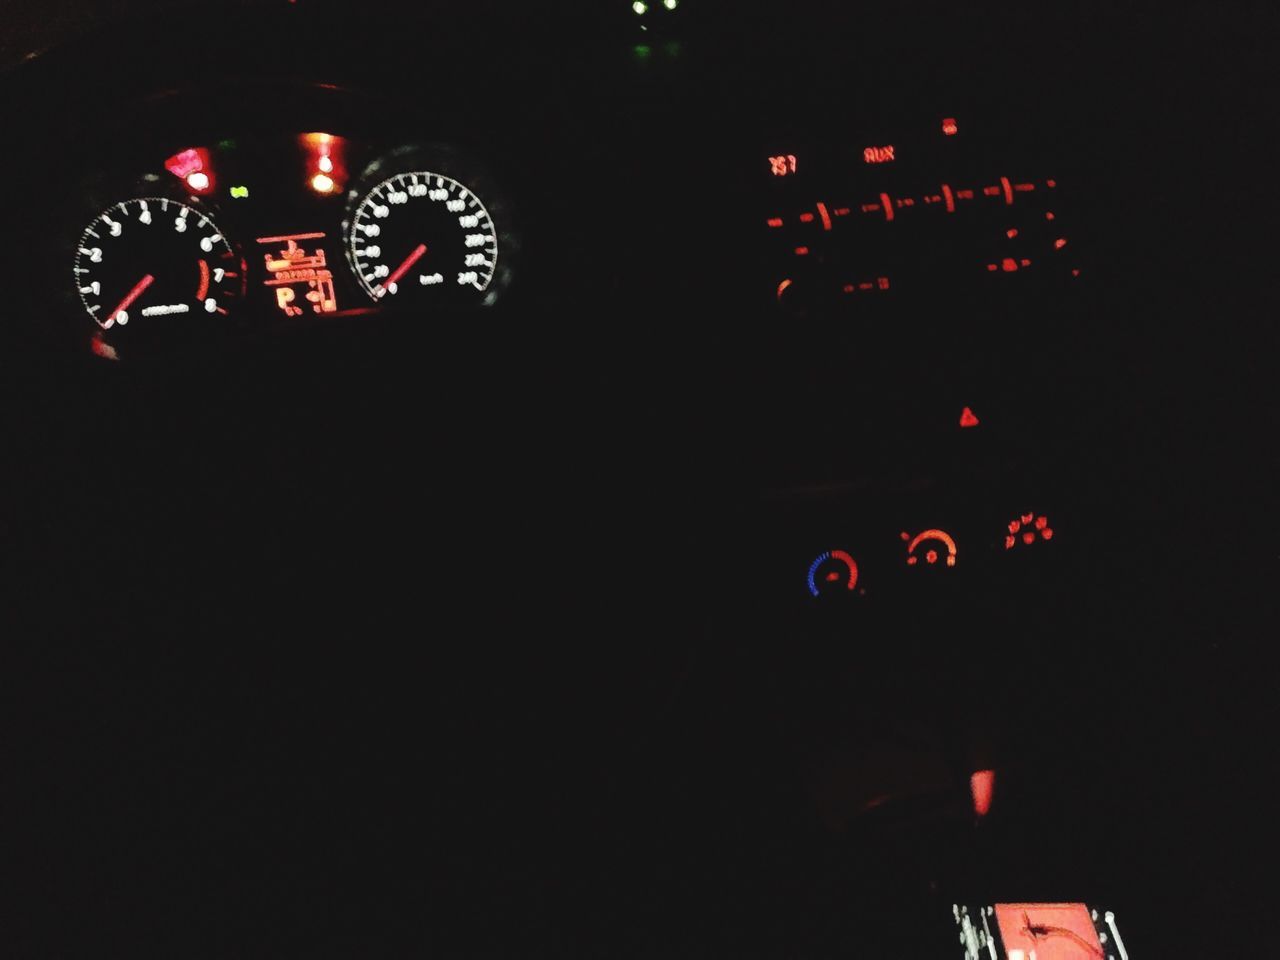 ILLUMINATED LIGHTING EQUIPMENT IN CAR